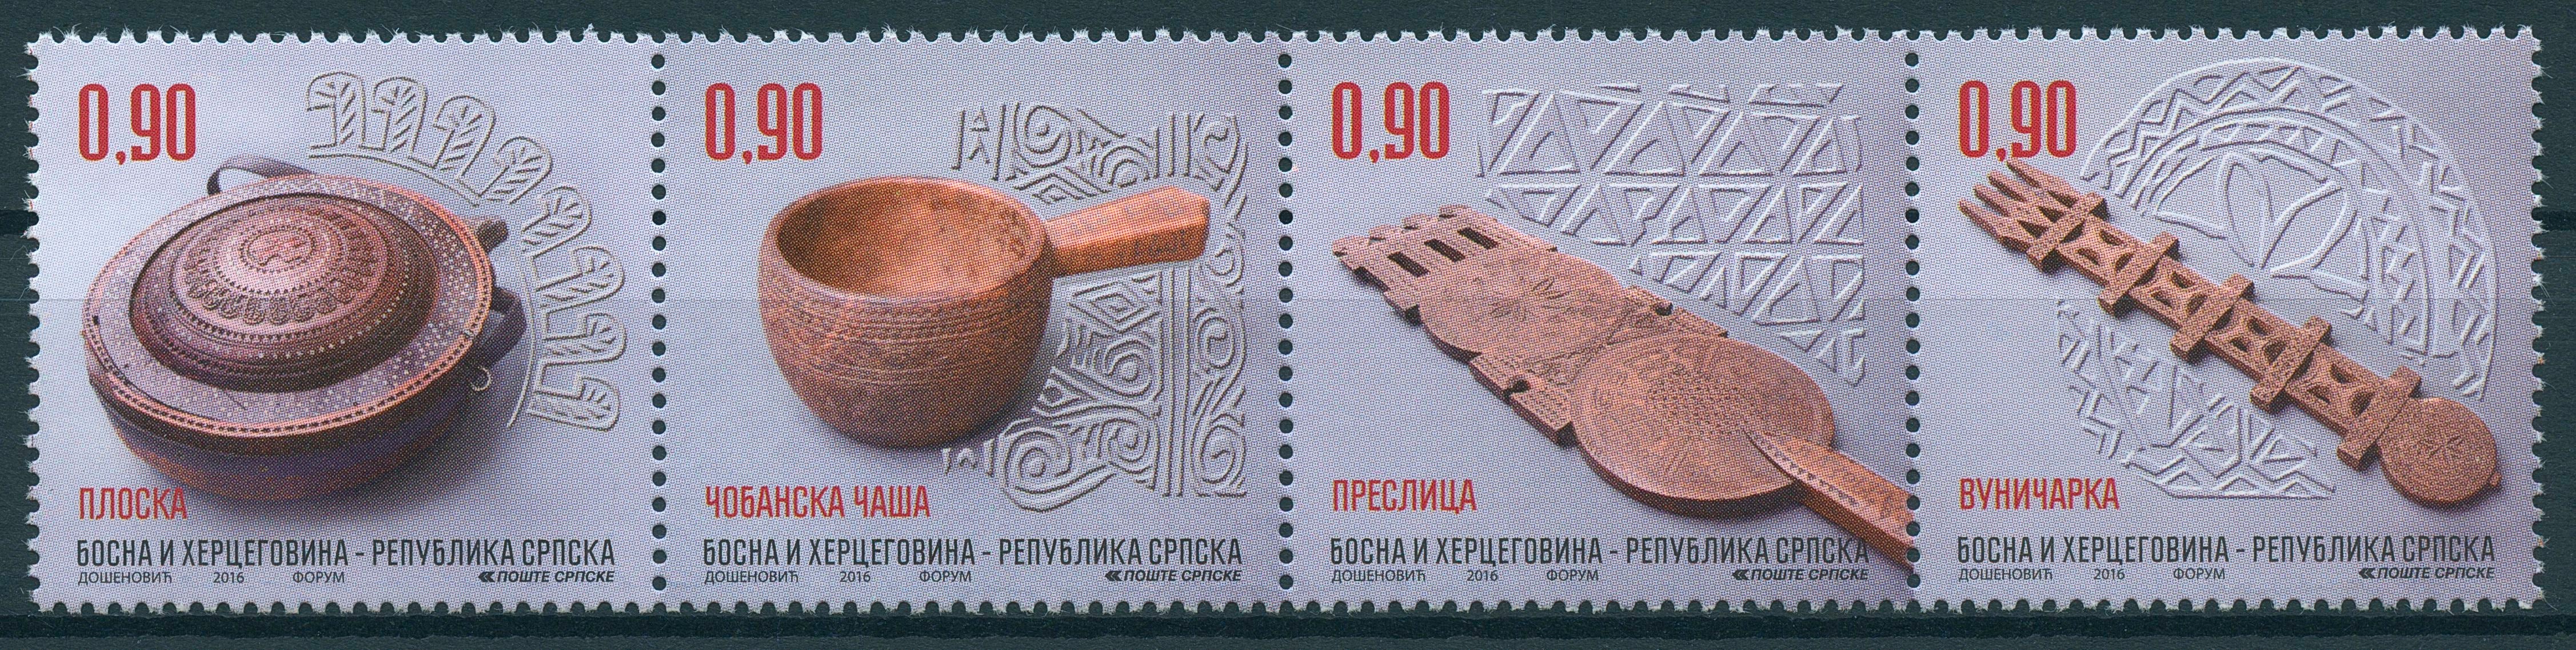 Bosnia & Herzegovina 2016 MNH Ethnological Treasures 4v Strip Artefacts Stamps